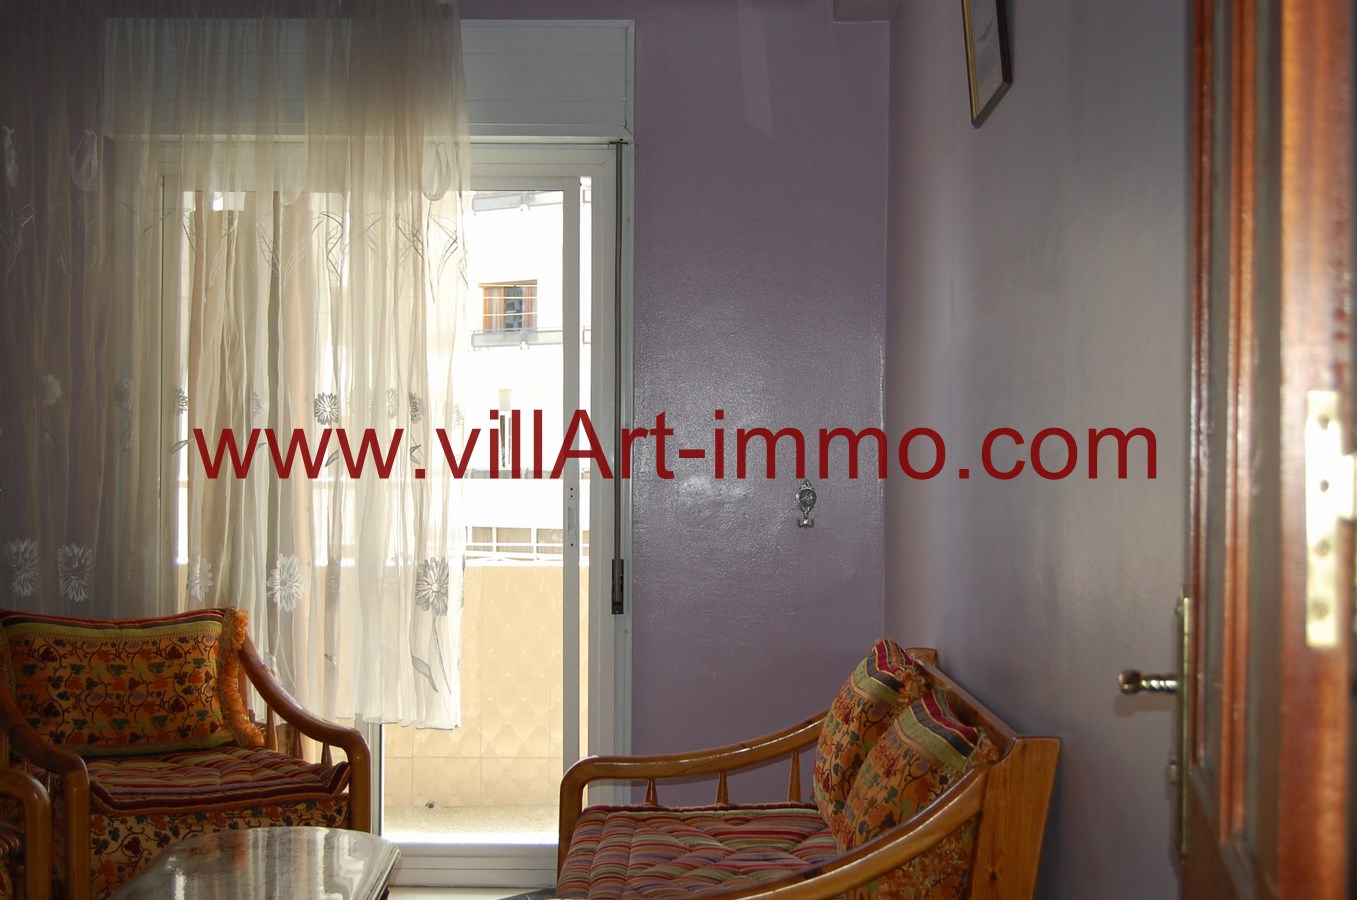 4-Location-Appartement-Meublé-Tanger-Sejour-L878-Villart immo